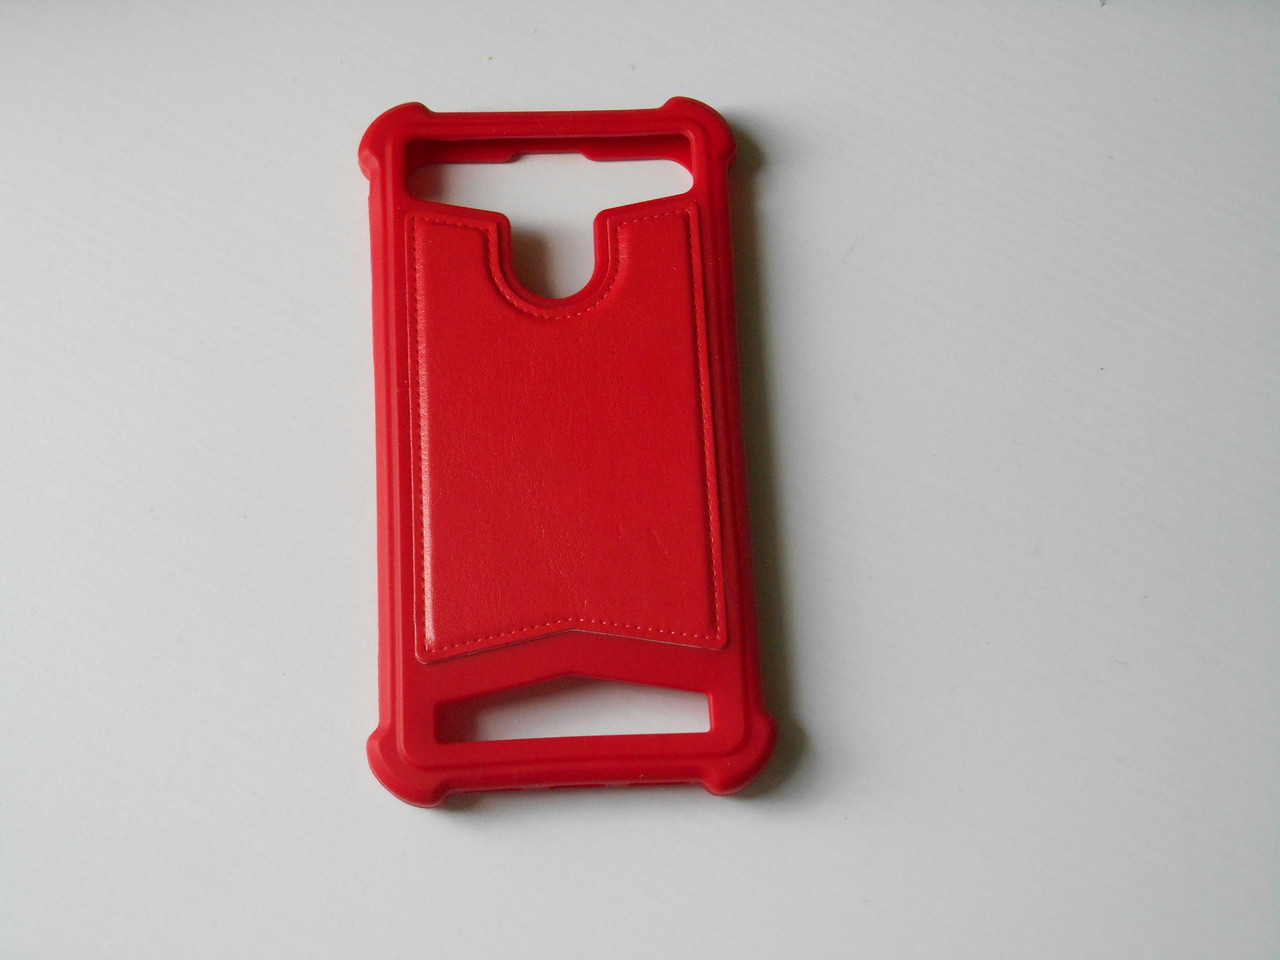 Універсальний силіконовий чохол з вставками шкіри  для телефона екран 4 дюйма червоного кольору